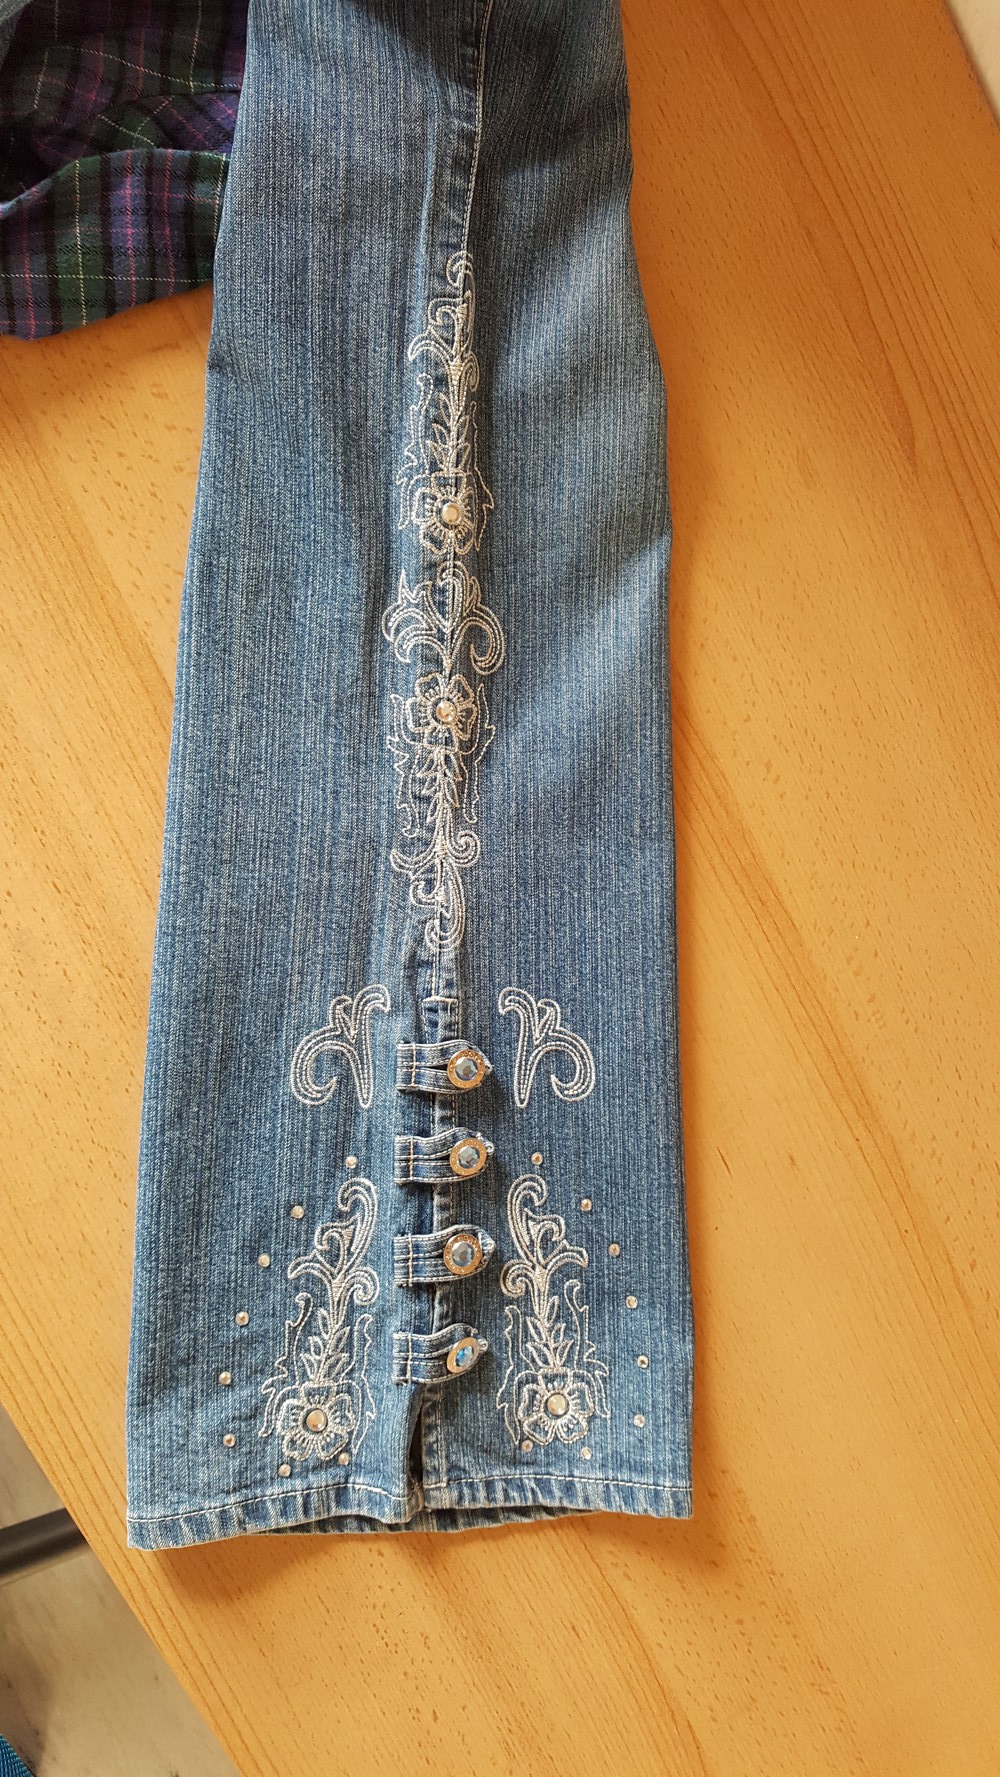 455. Retro-Schlag-Jeans mit Stickerei, Strasssteinchen und Schmuckknöpfen, Gr. 38